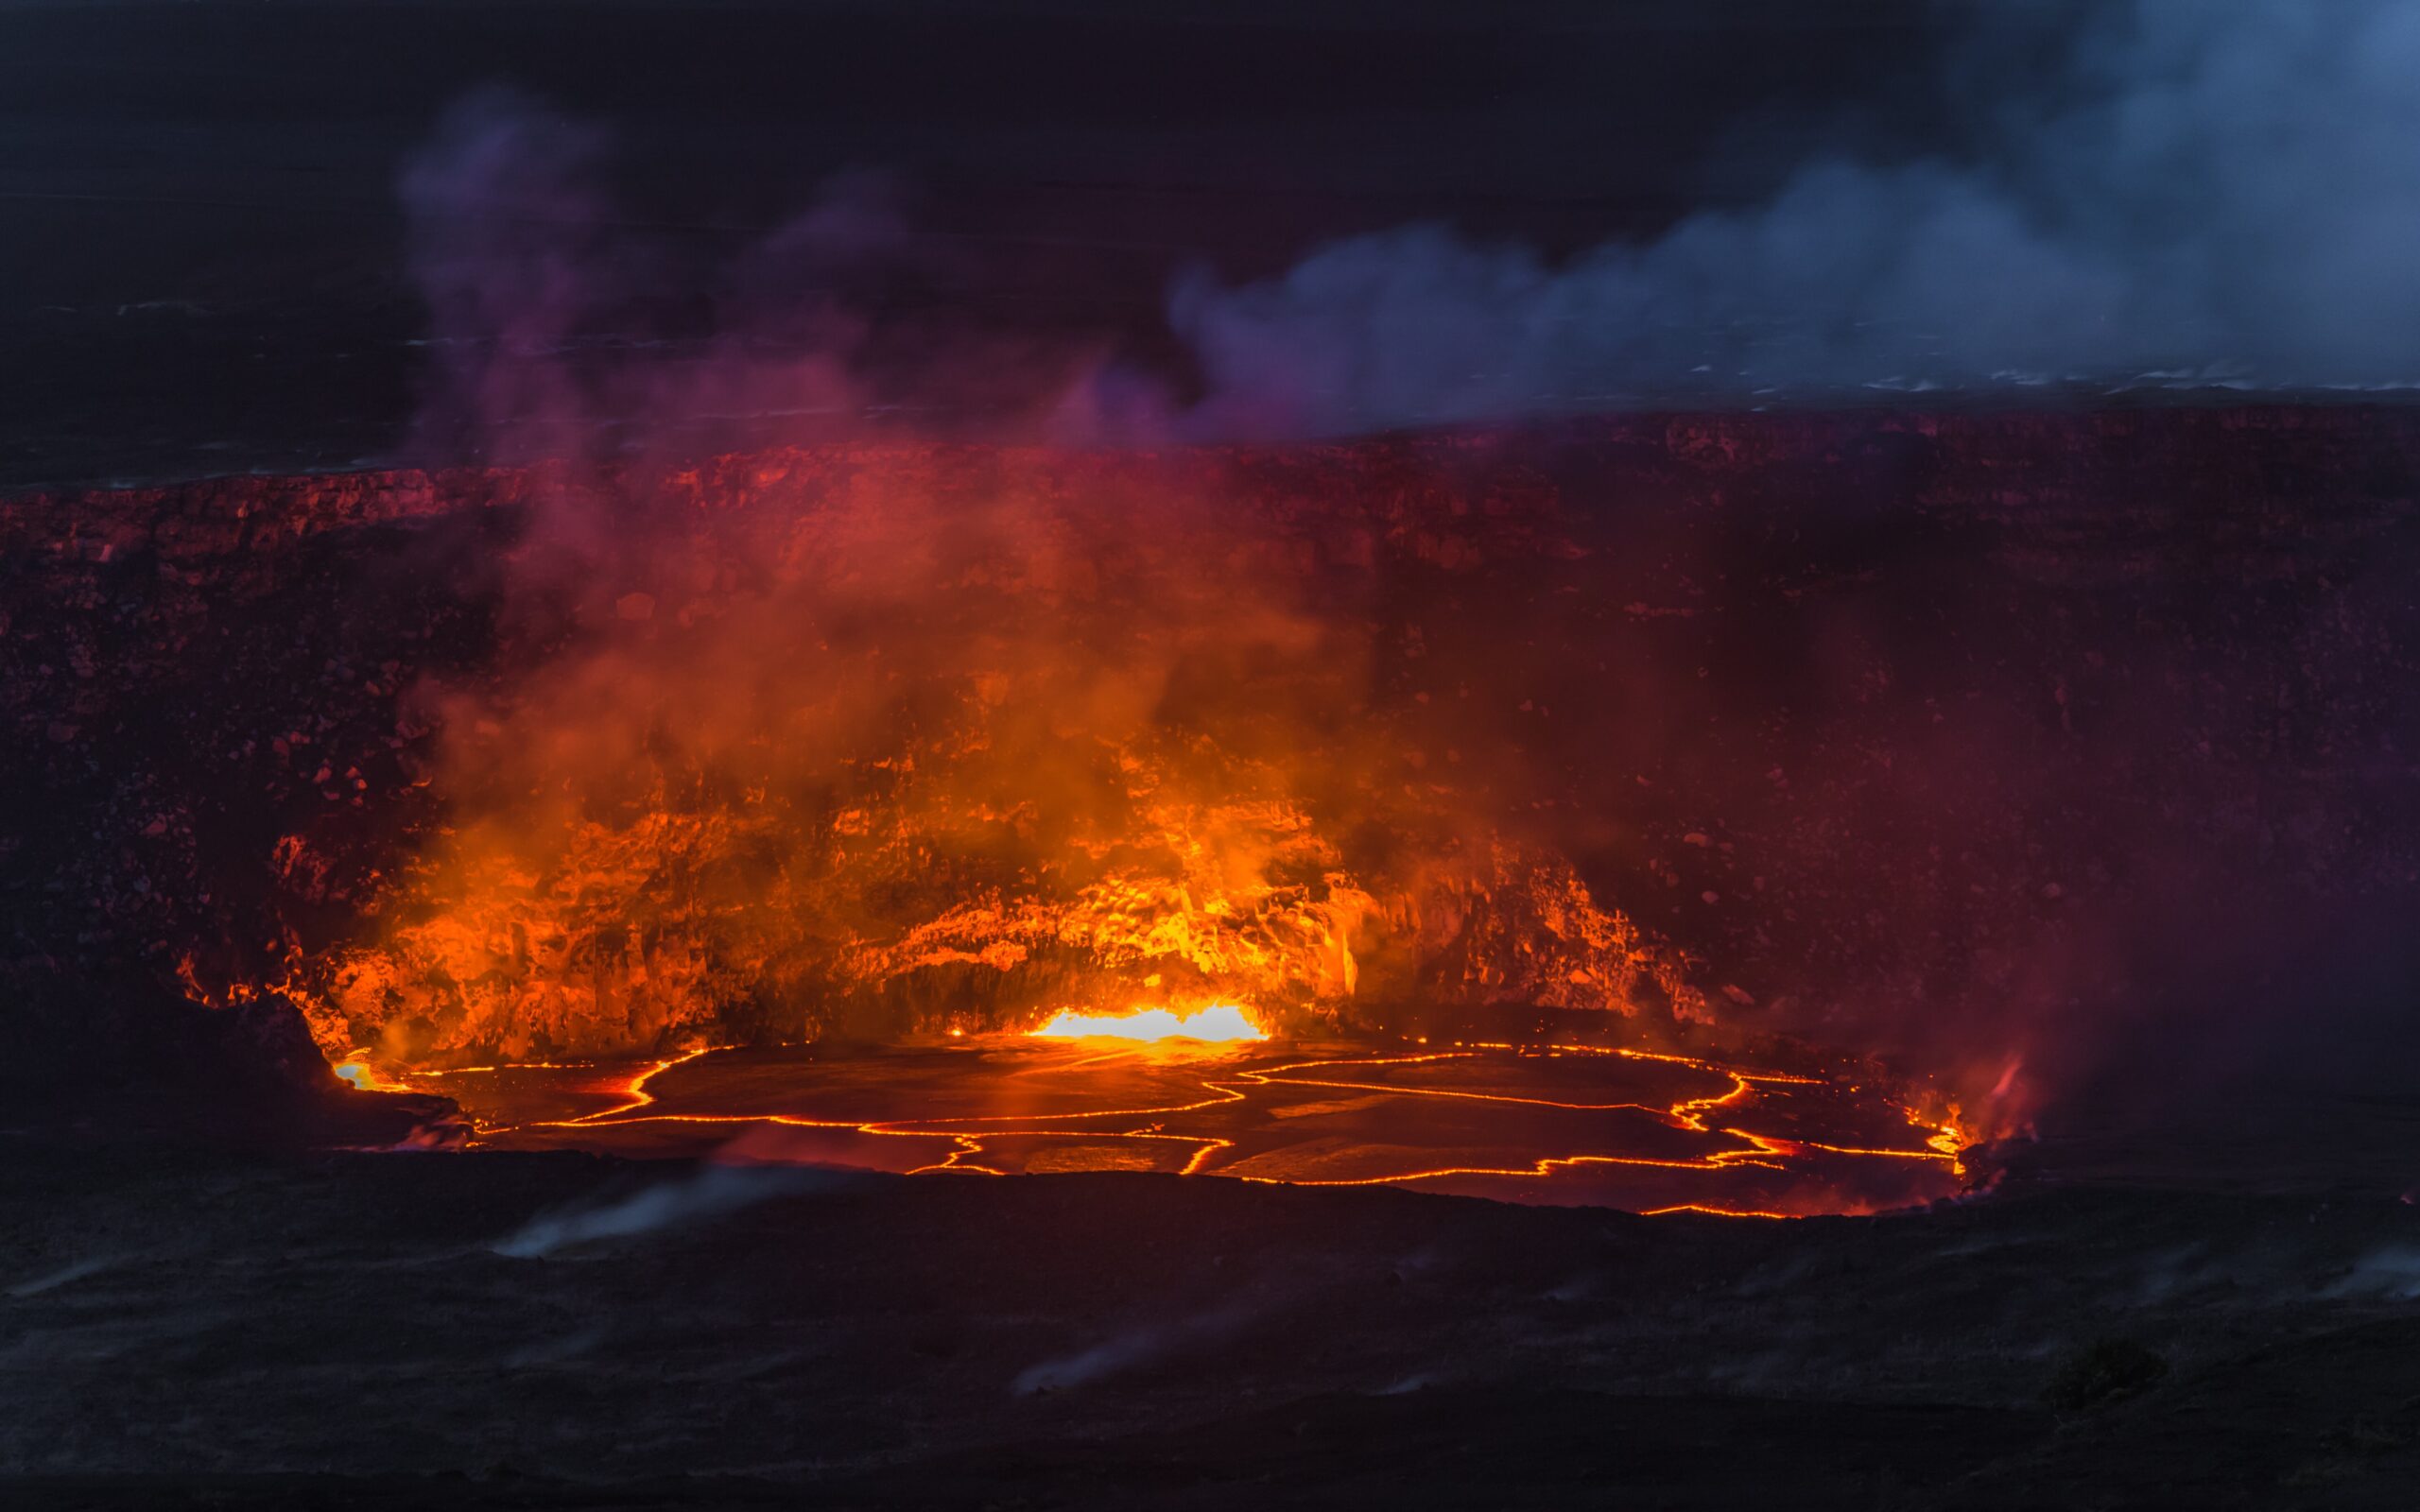 Le volcan Kilauea à nouveau en éruption sur l’île d’Hawaï